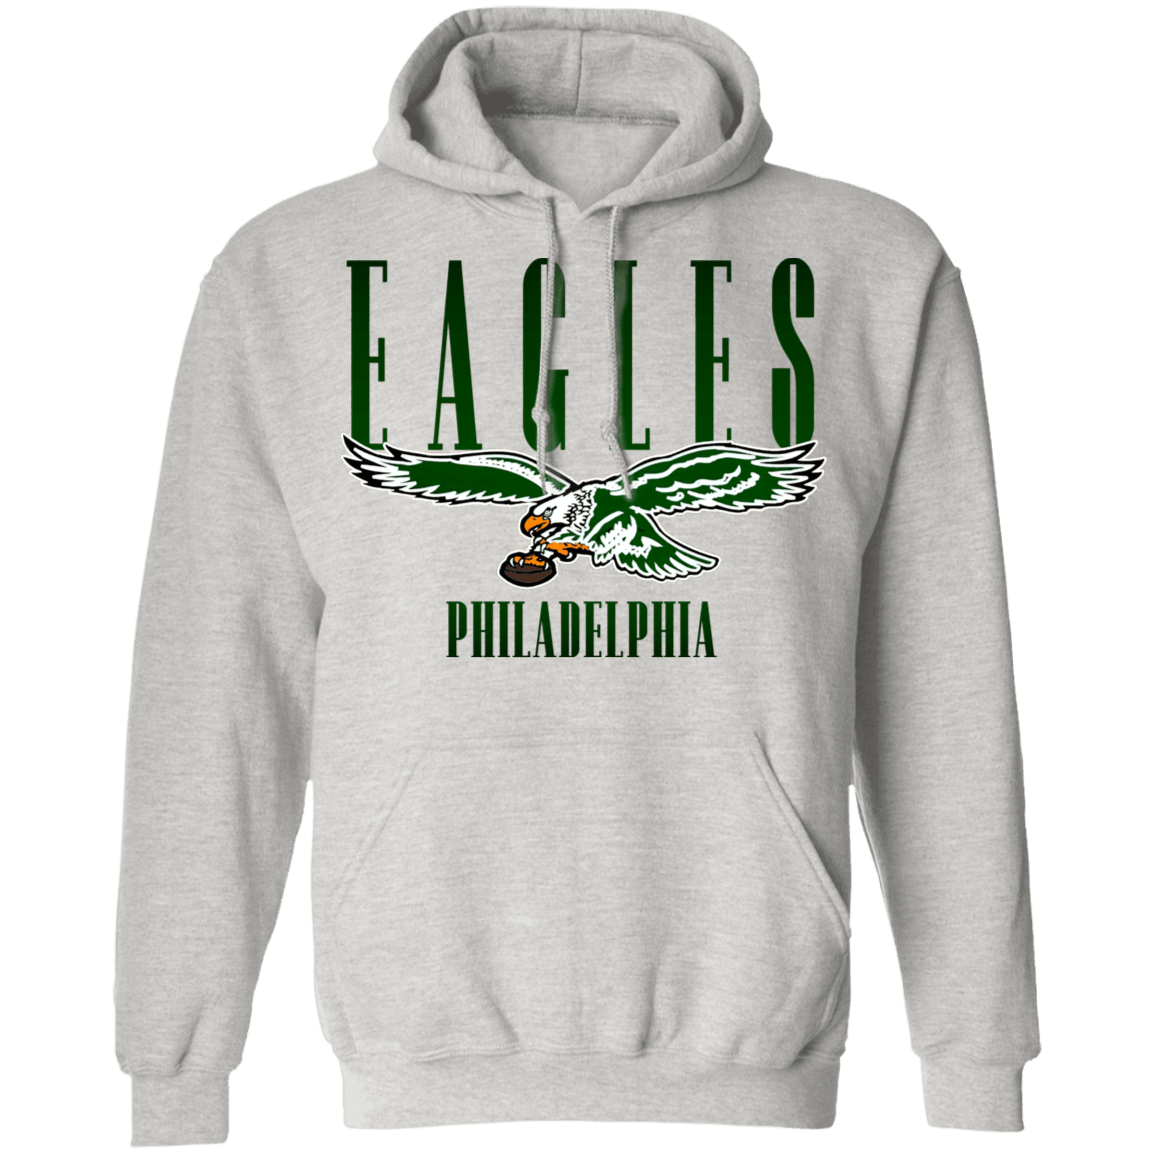 eagles vintage hoodie